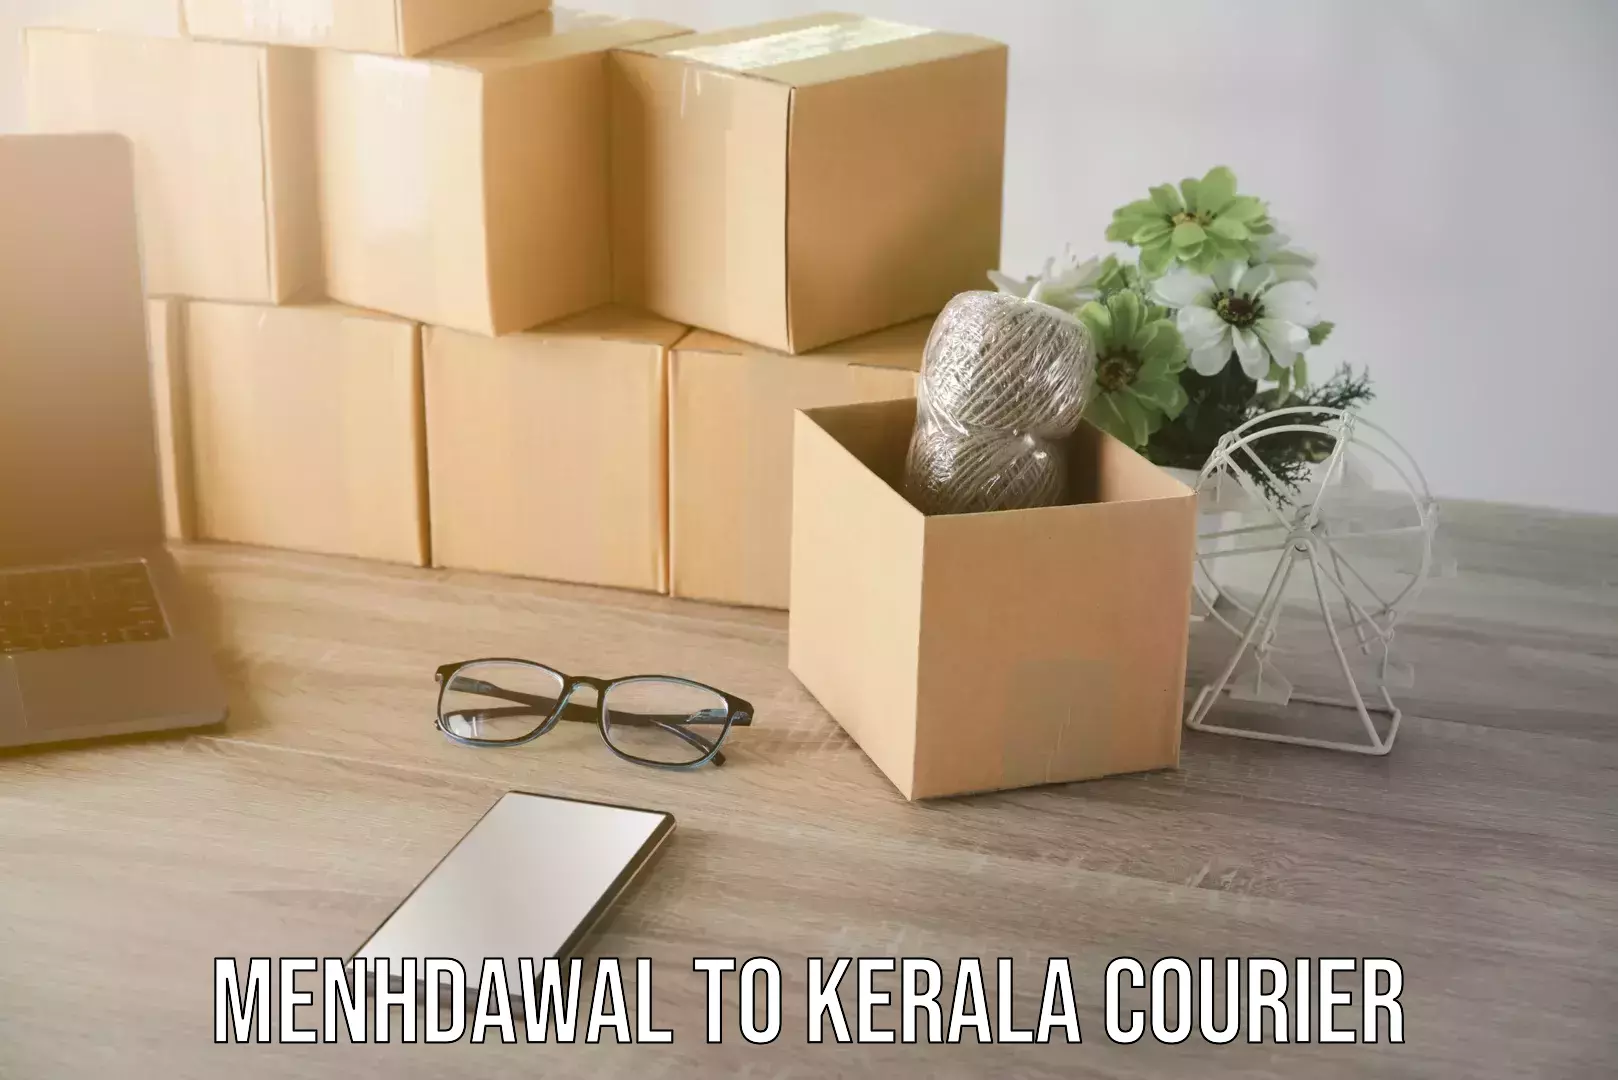 Stress-free moving Menhdawal to Kerala